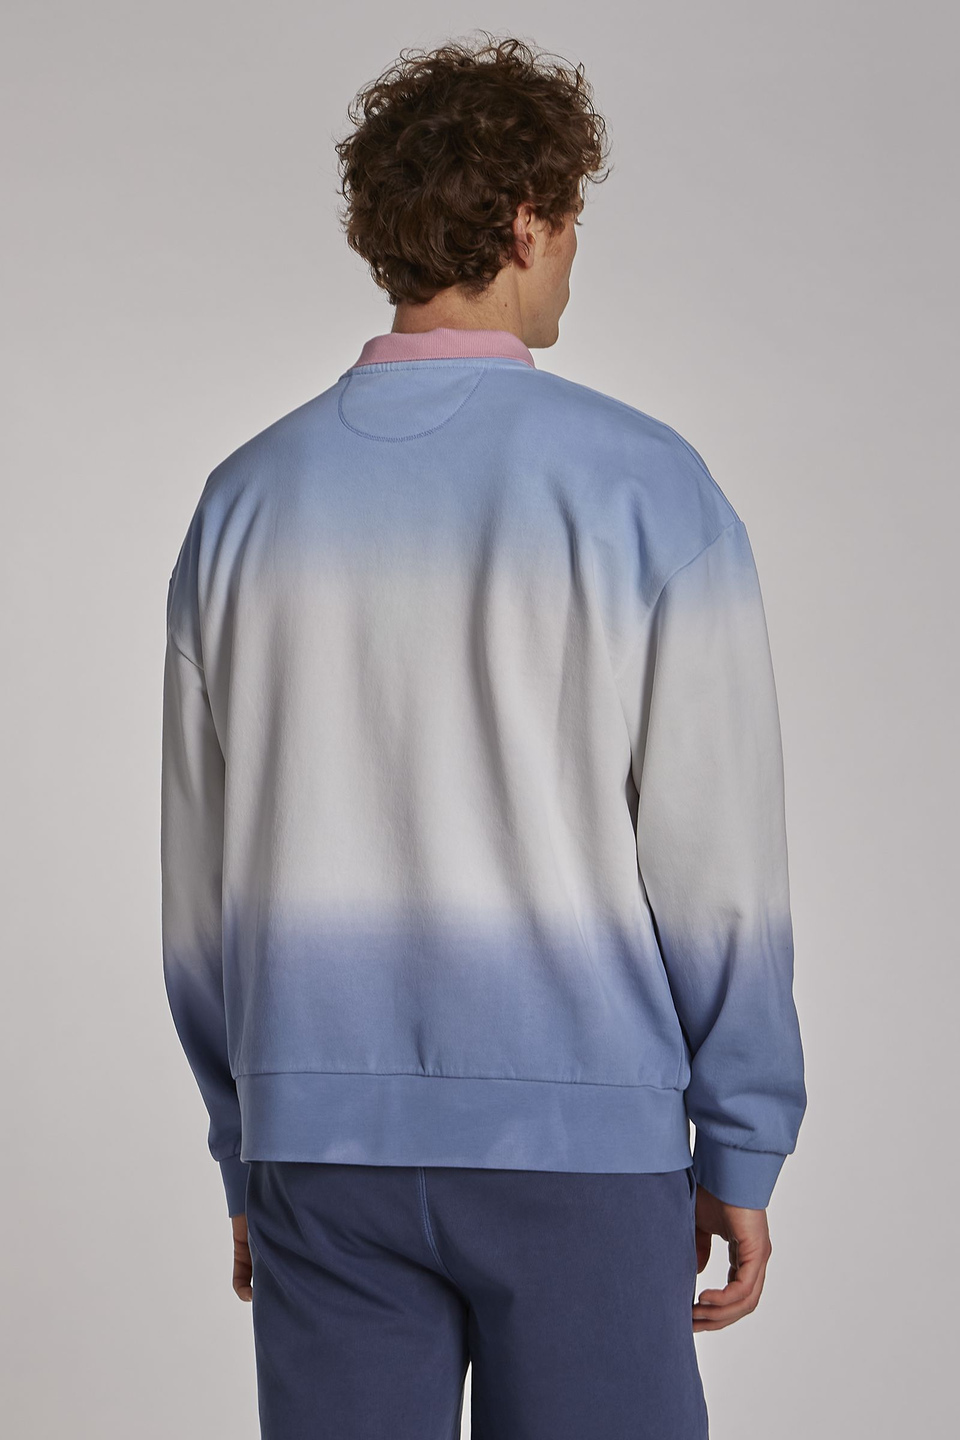 Herren-Sweatshirt aus 100 % Baumwolle mit Rundhalsausschnitt, oversized Modell - La Martina - Official Online Shop